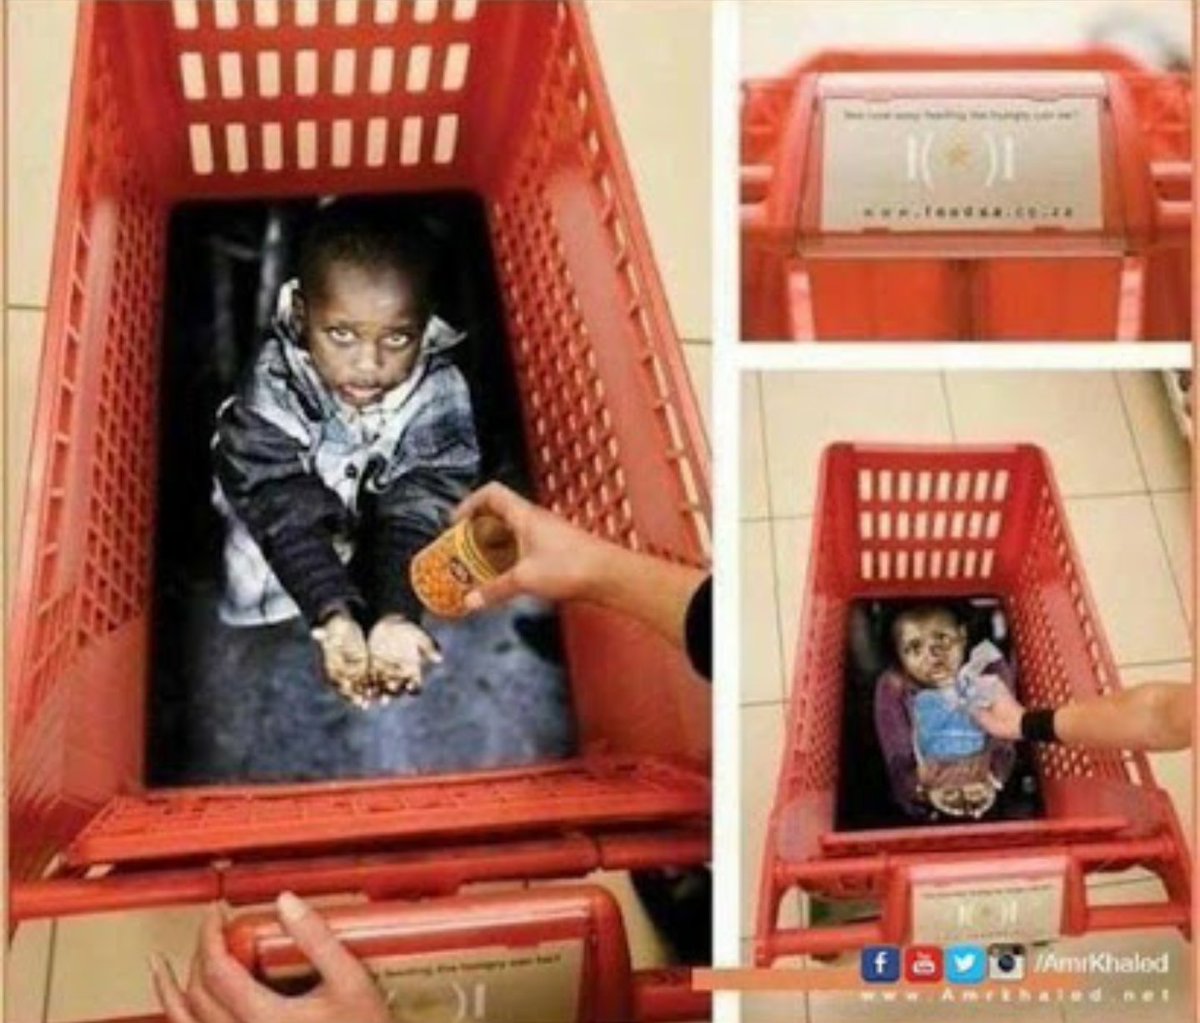 صورة متدوالة لطفل فقير داخل عربة تسوق